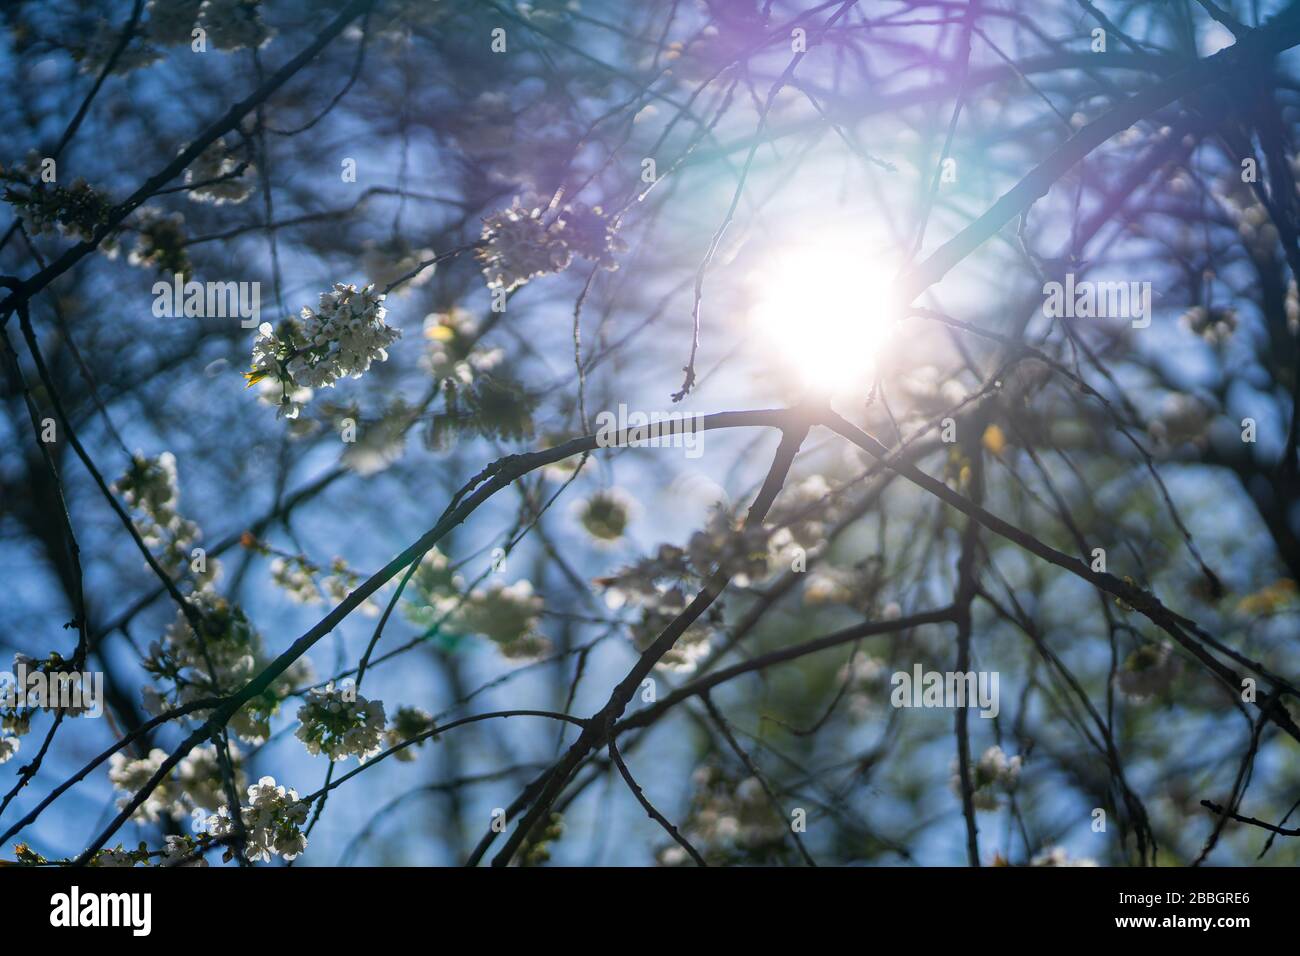 Frühlingsblütenhintergrund. Blühende Blumen eines wilden Kirschbaums in der Natur. Abstrakter verschwommener Hintergrund und Sonnenschein, schöner Stadtpark. Stockfoto